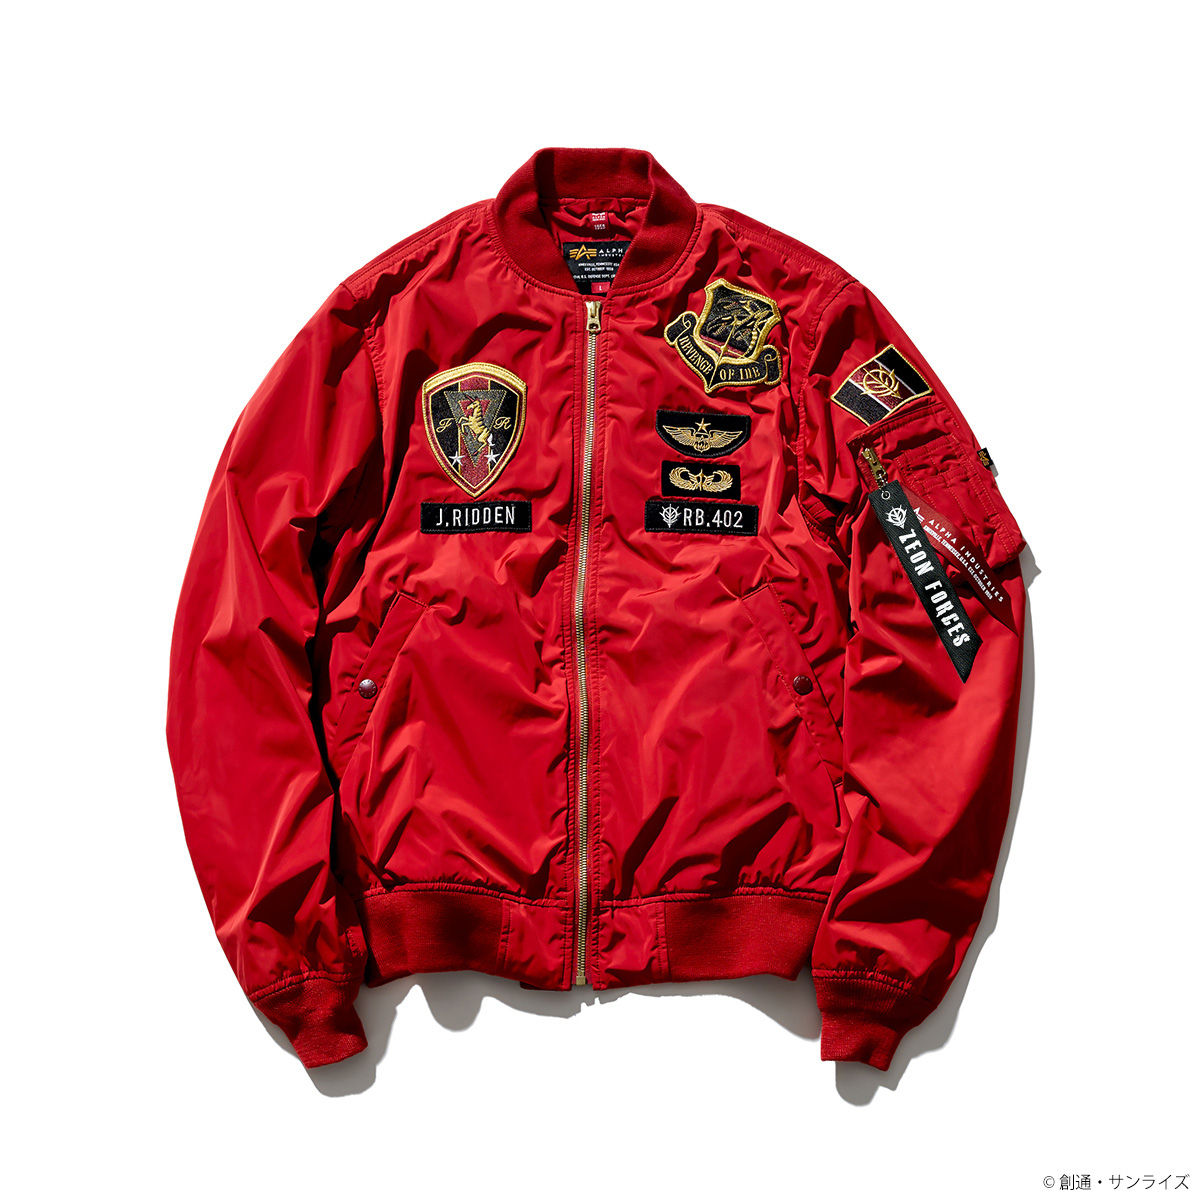 49％割引グレイ系,M格安販売の STRICT-G ALPHA MA-1 jacket ジオン ザク ガンダム フライトジャケット ジャケット